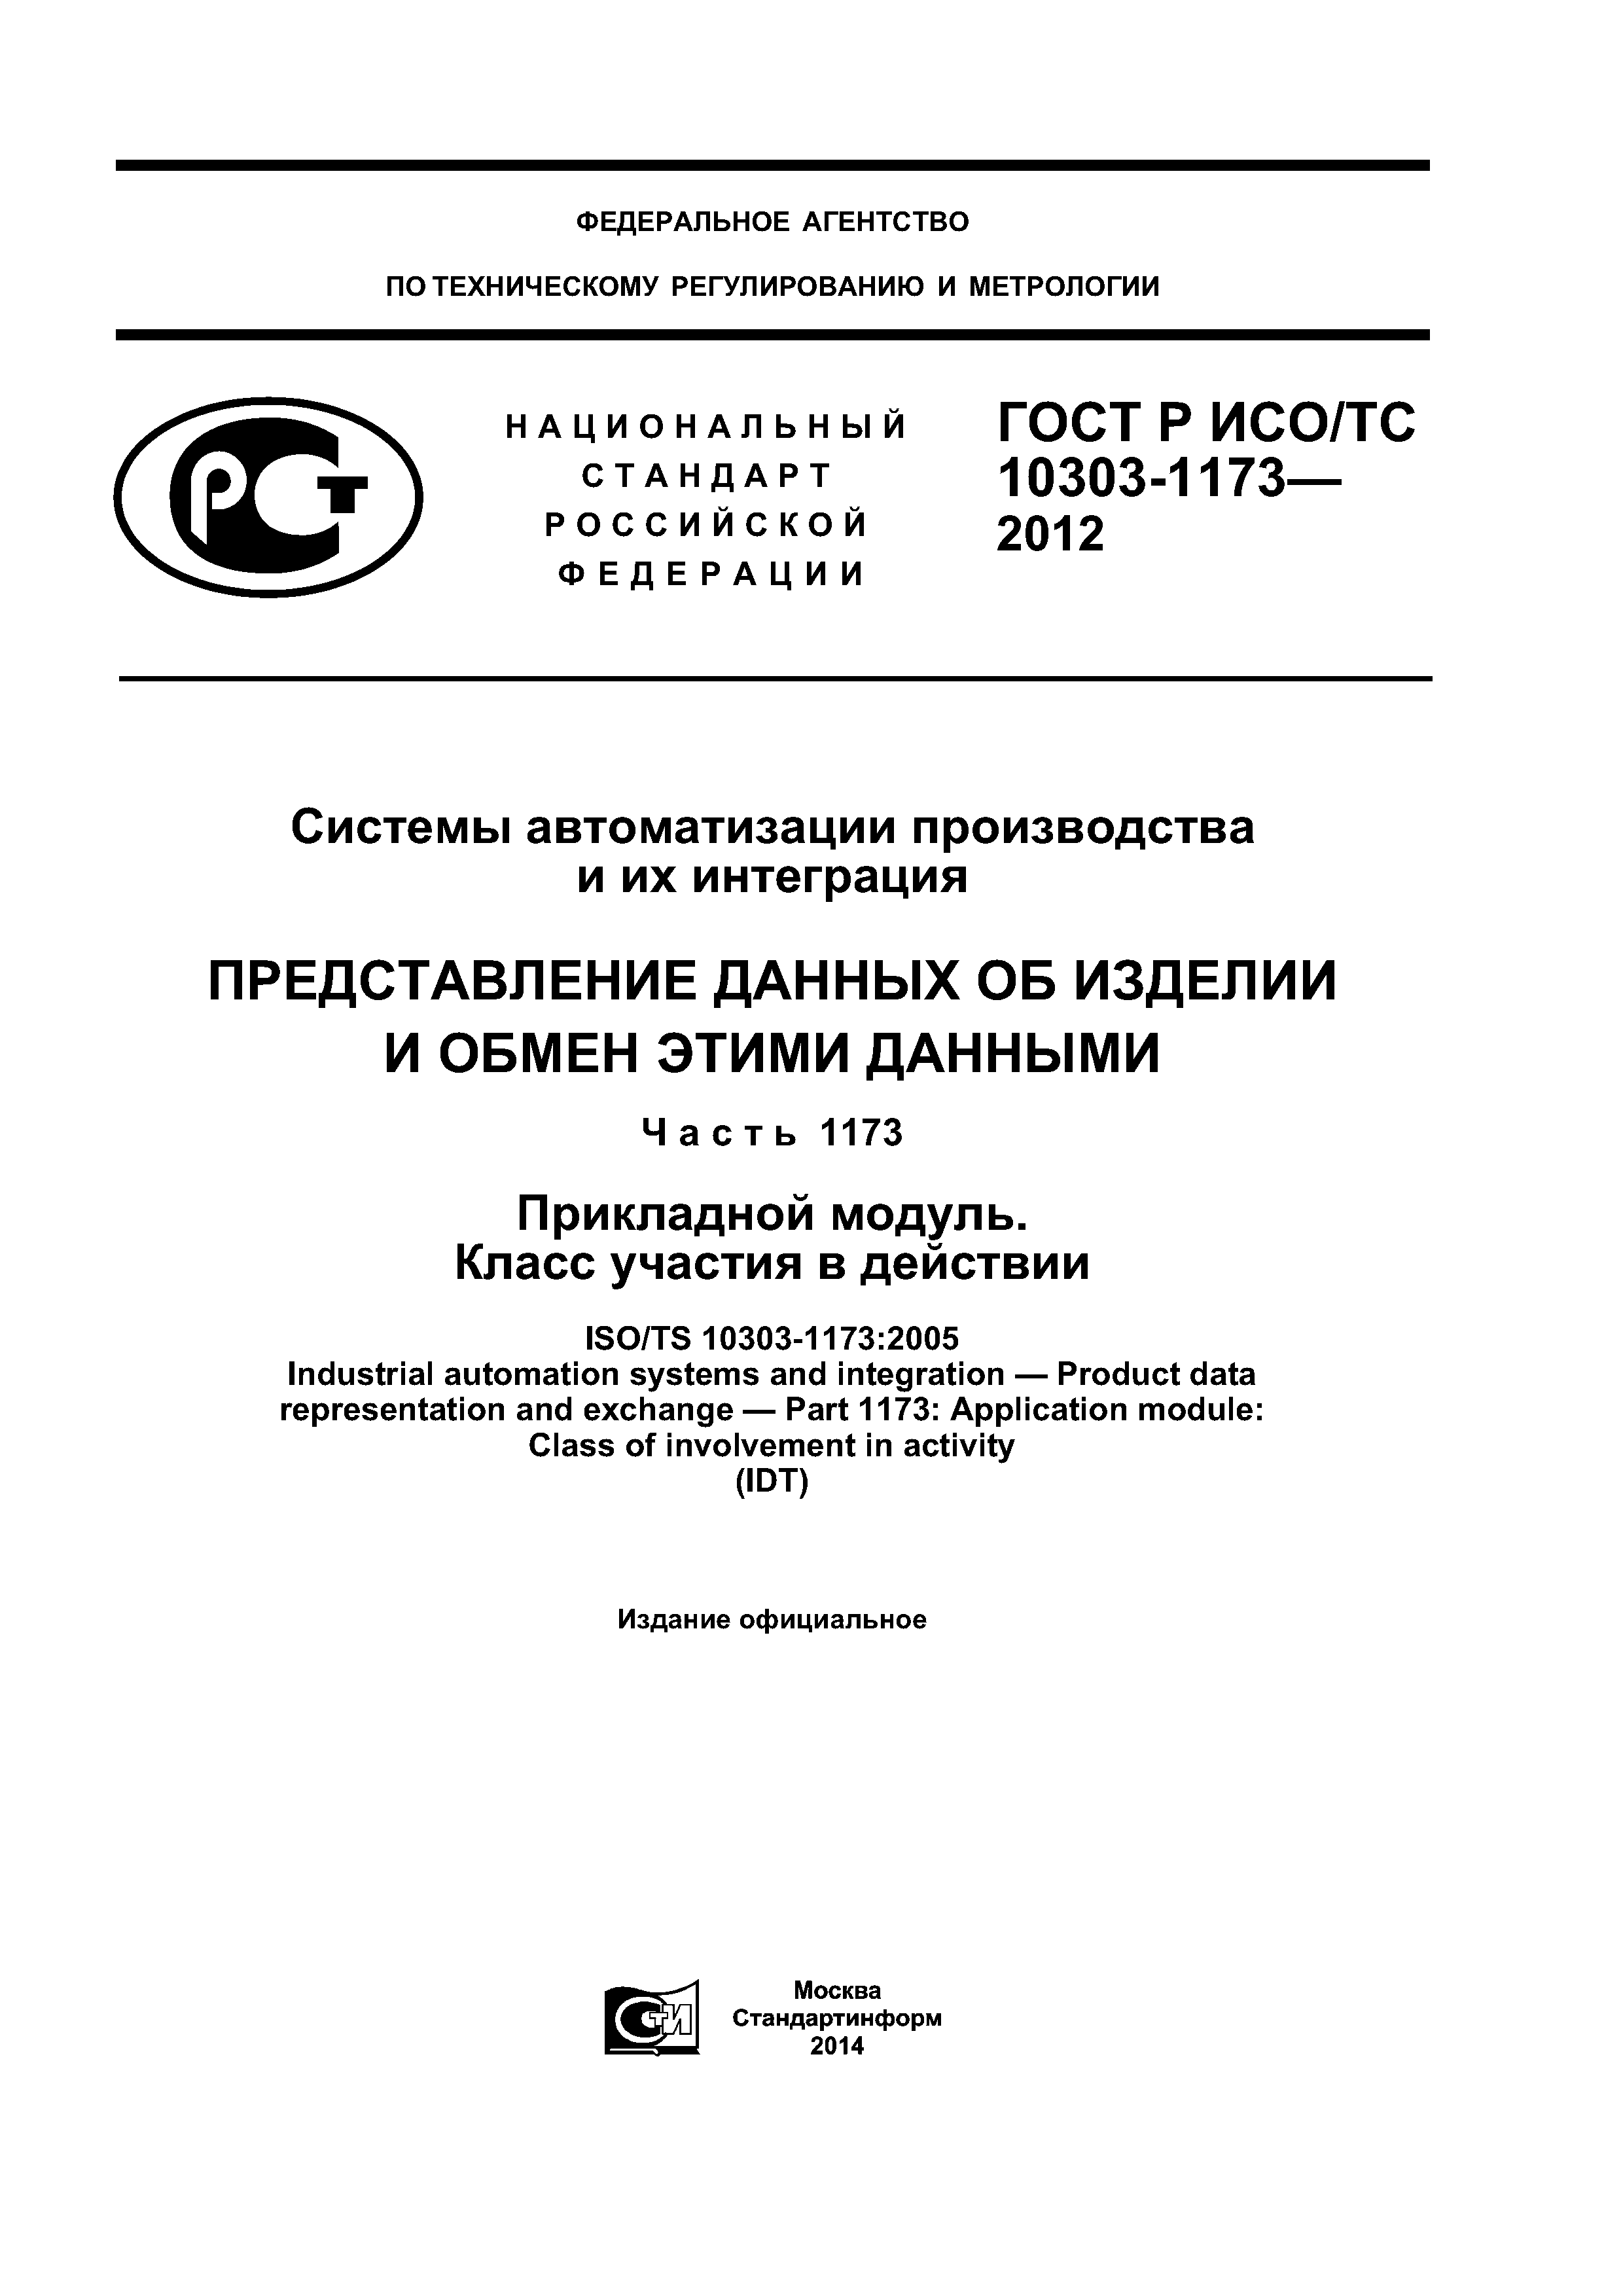 ГОСТ Р ИСО/ТС 10303-1173-2012